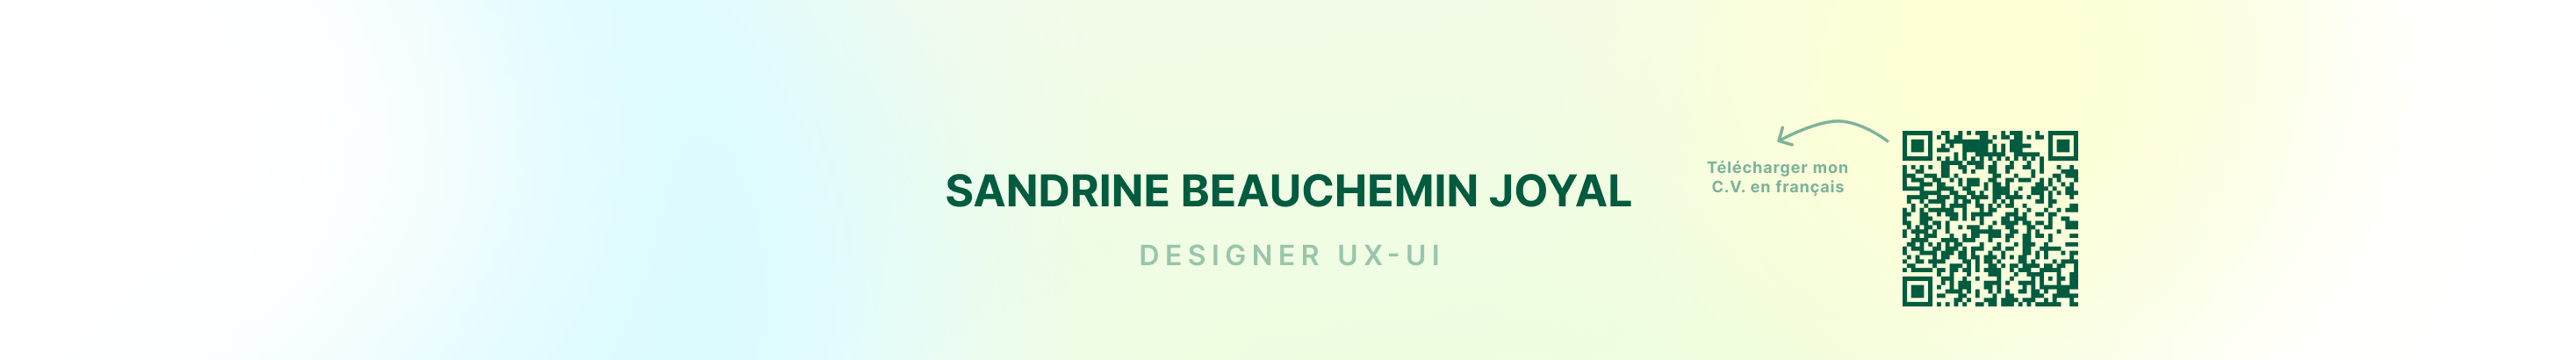 Sandrine Beauchemin Joyal's profile banner